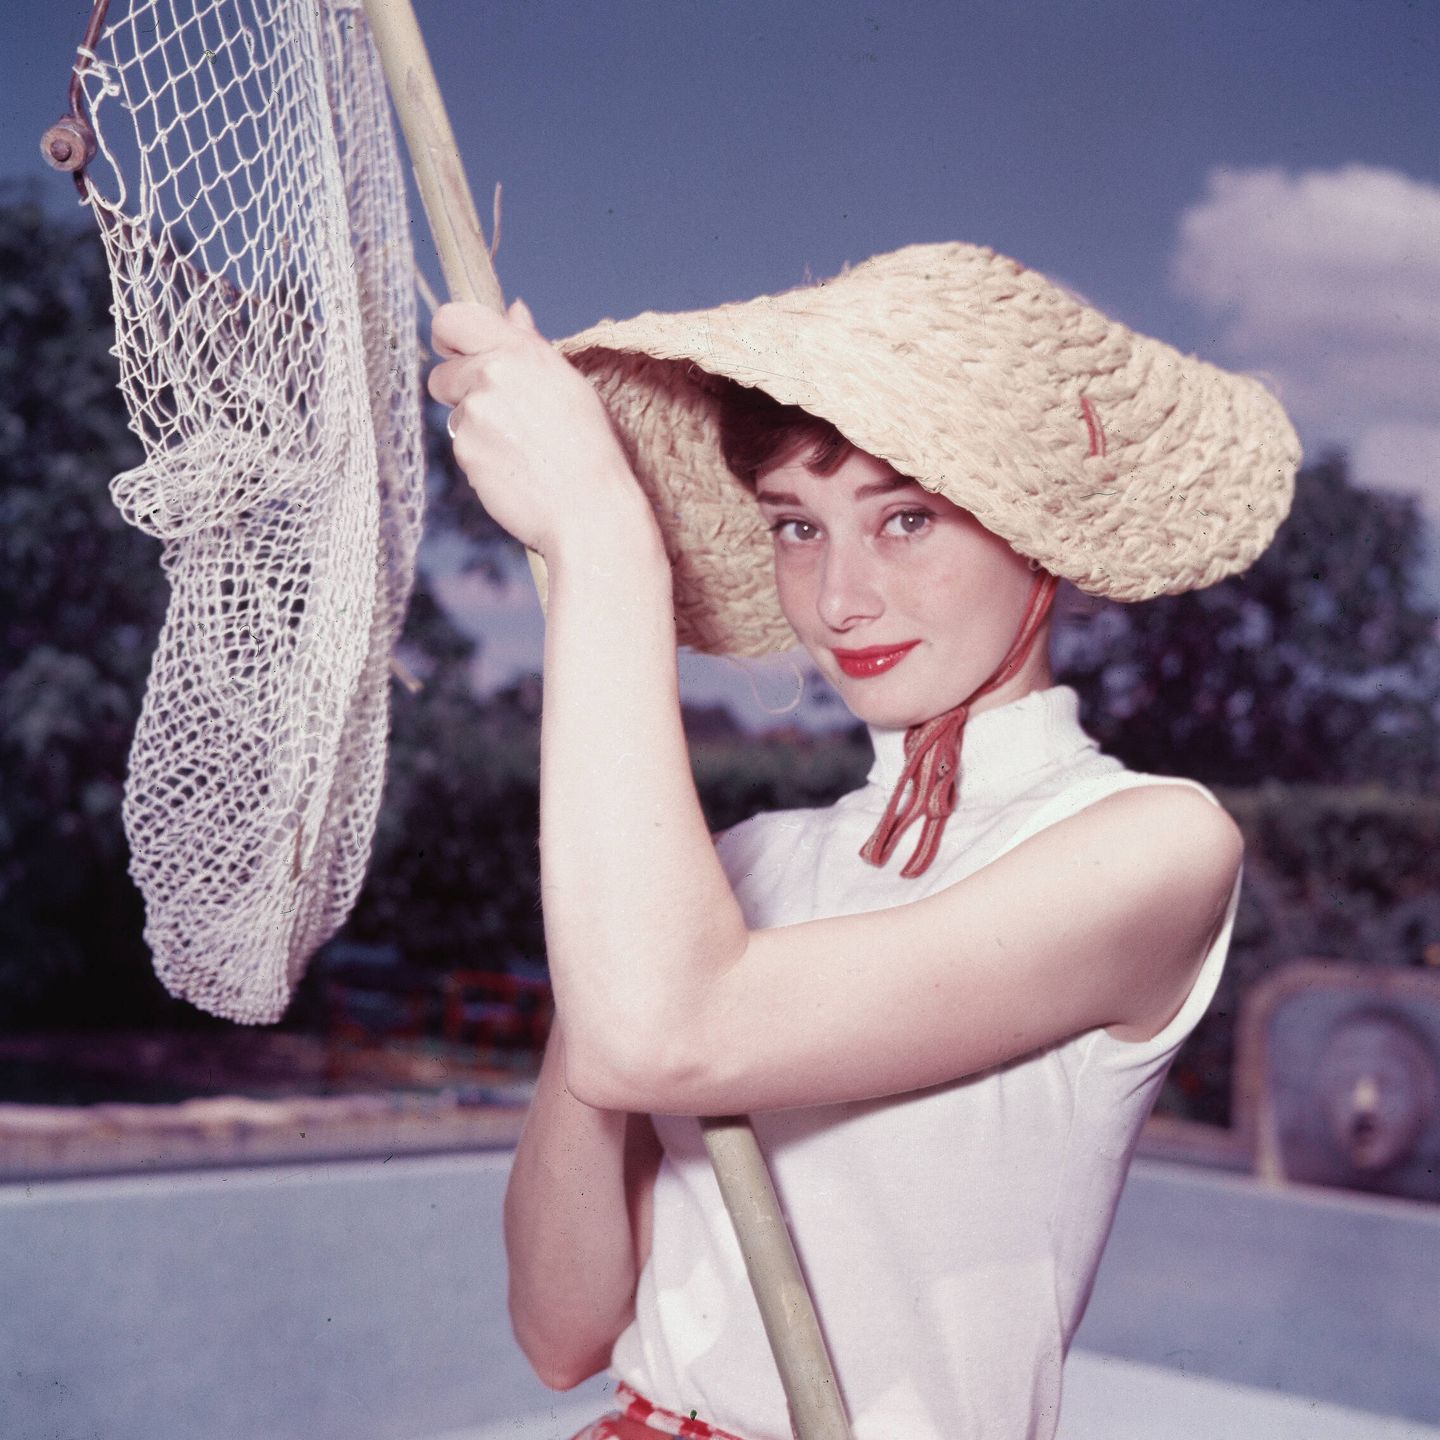 La eternamente joven y bella Audrey Hepburn. (Getty Images)